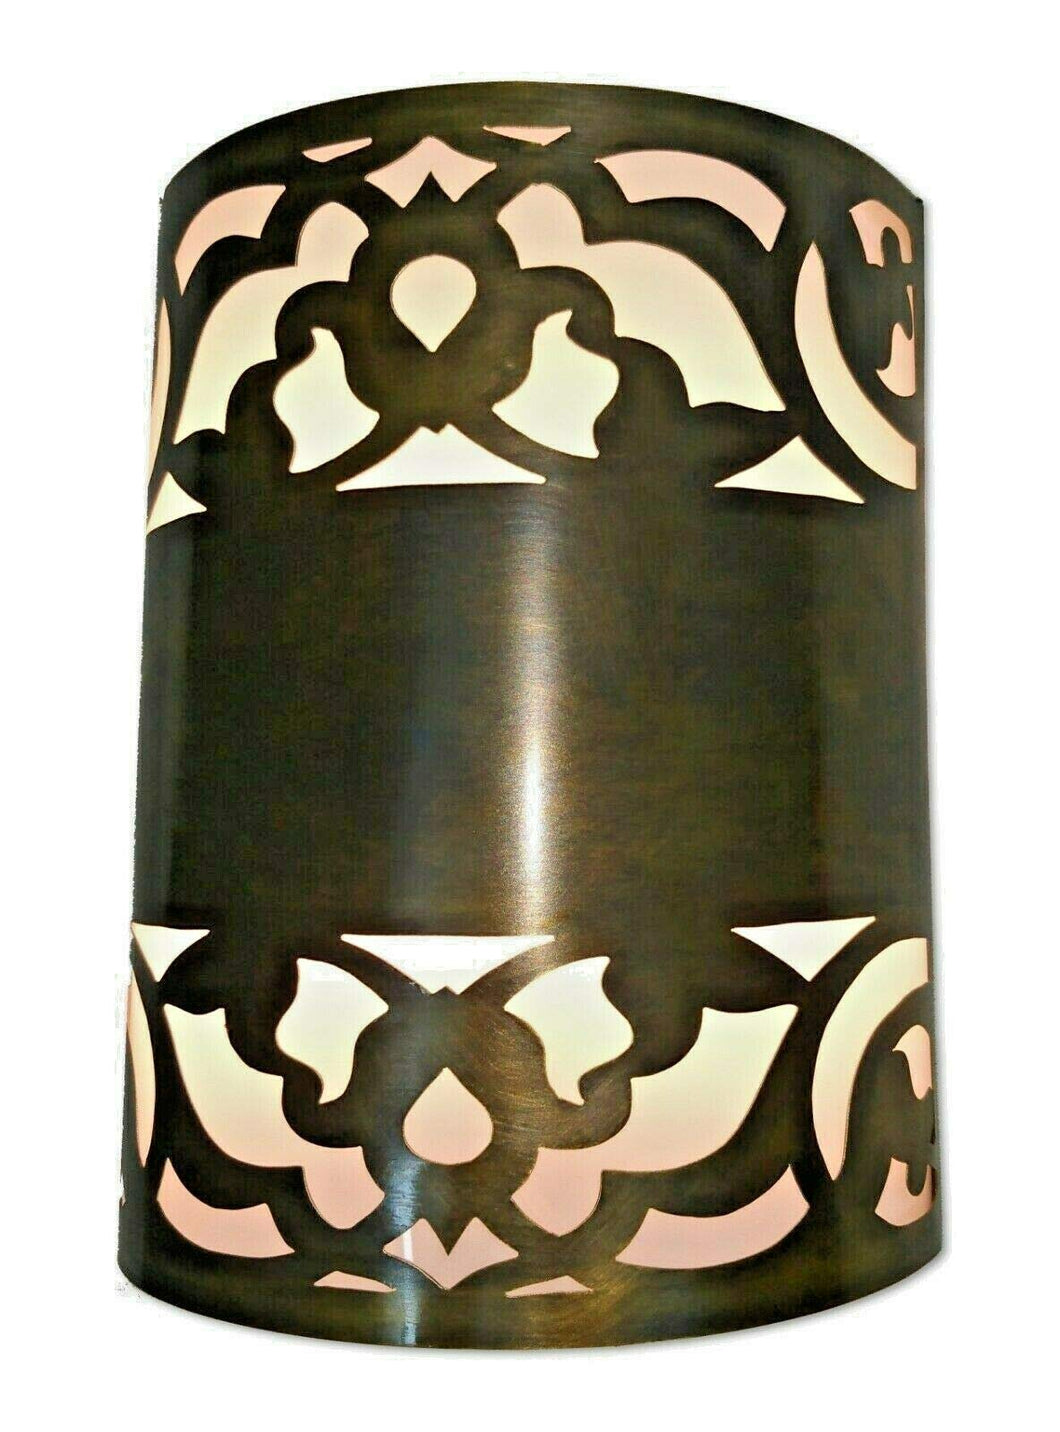 B193 Handmade Brass Cylinder Flush Mount Ceiling Light/Wall Sconce